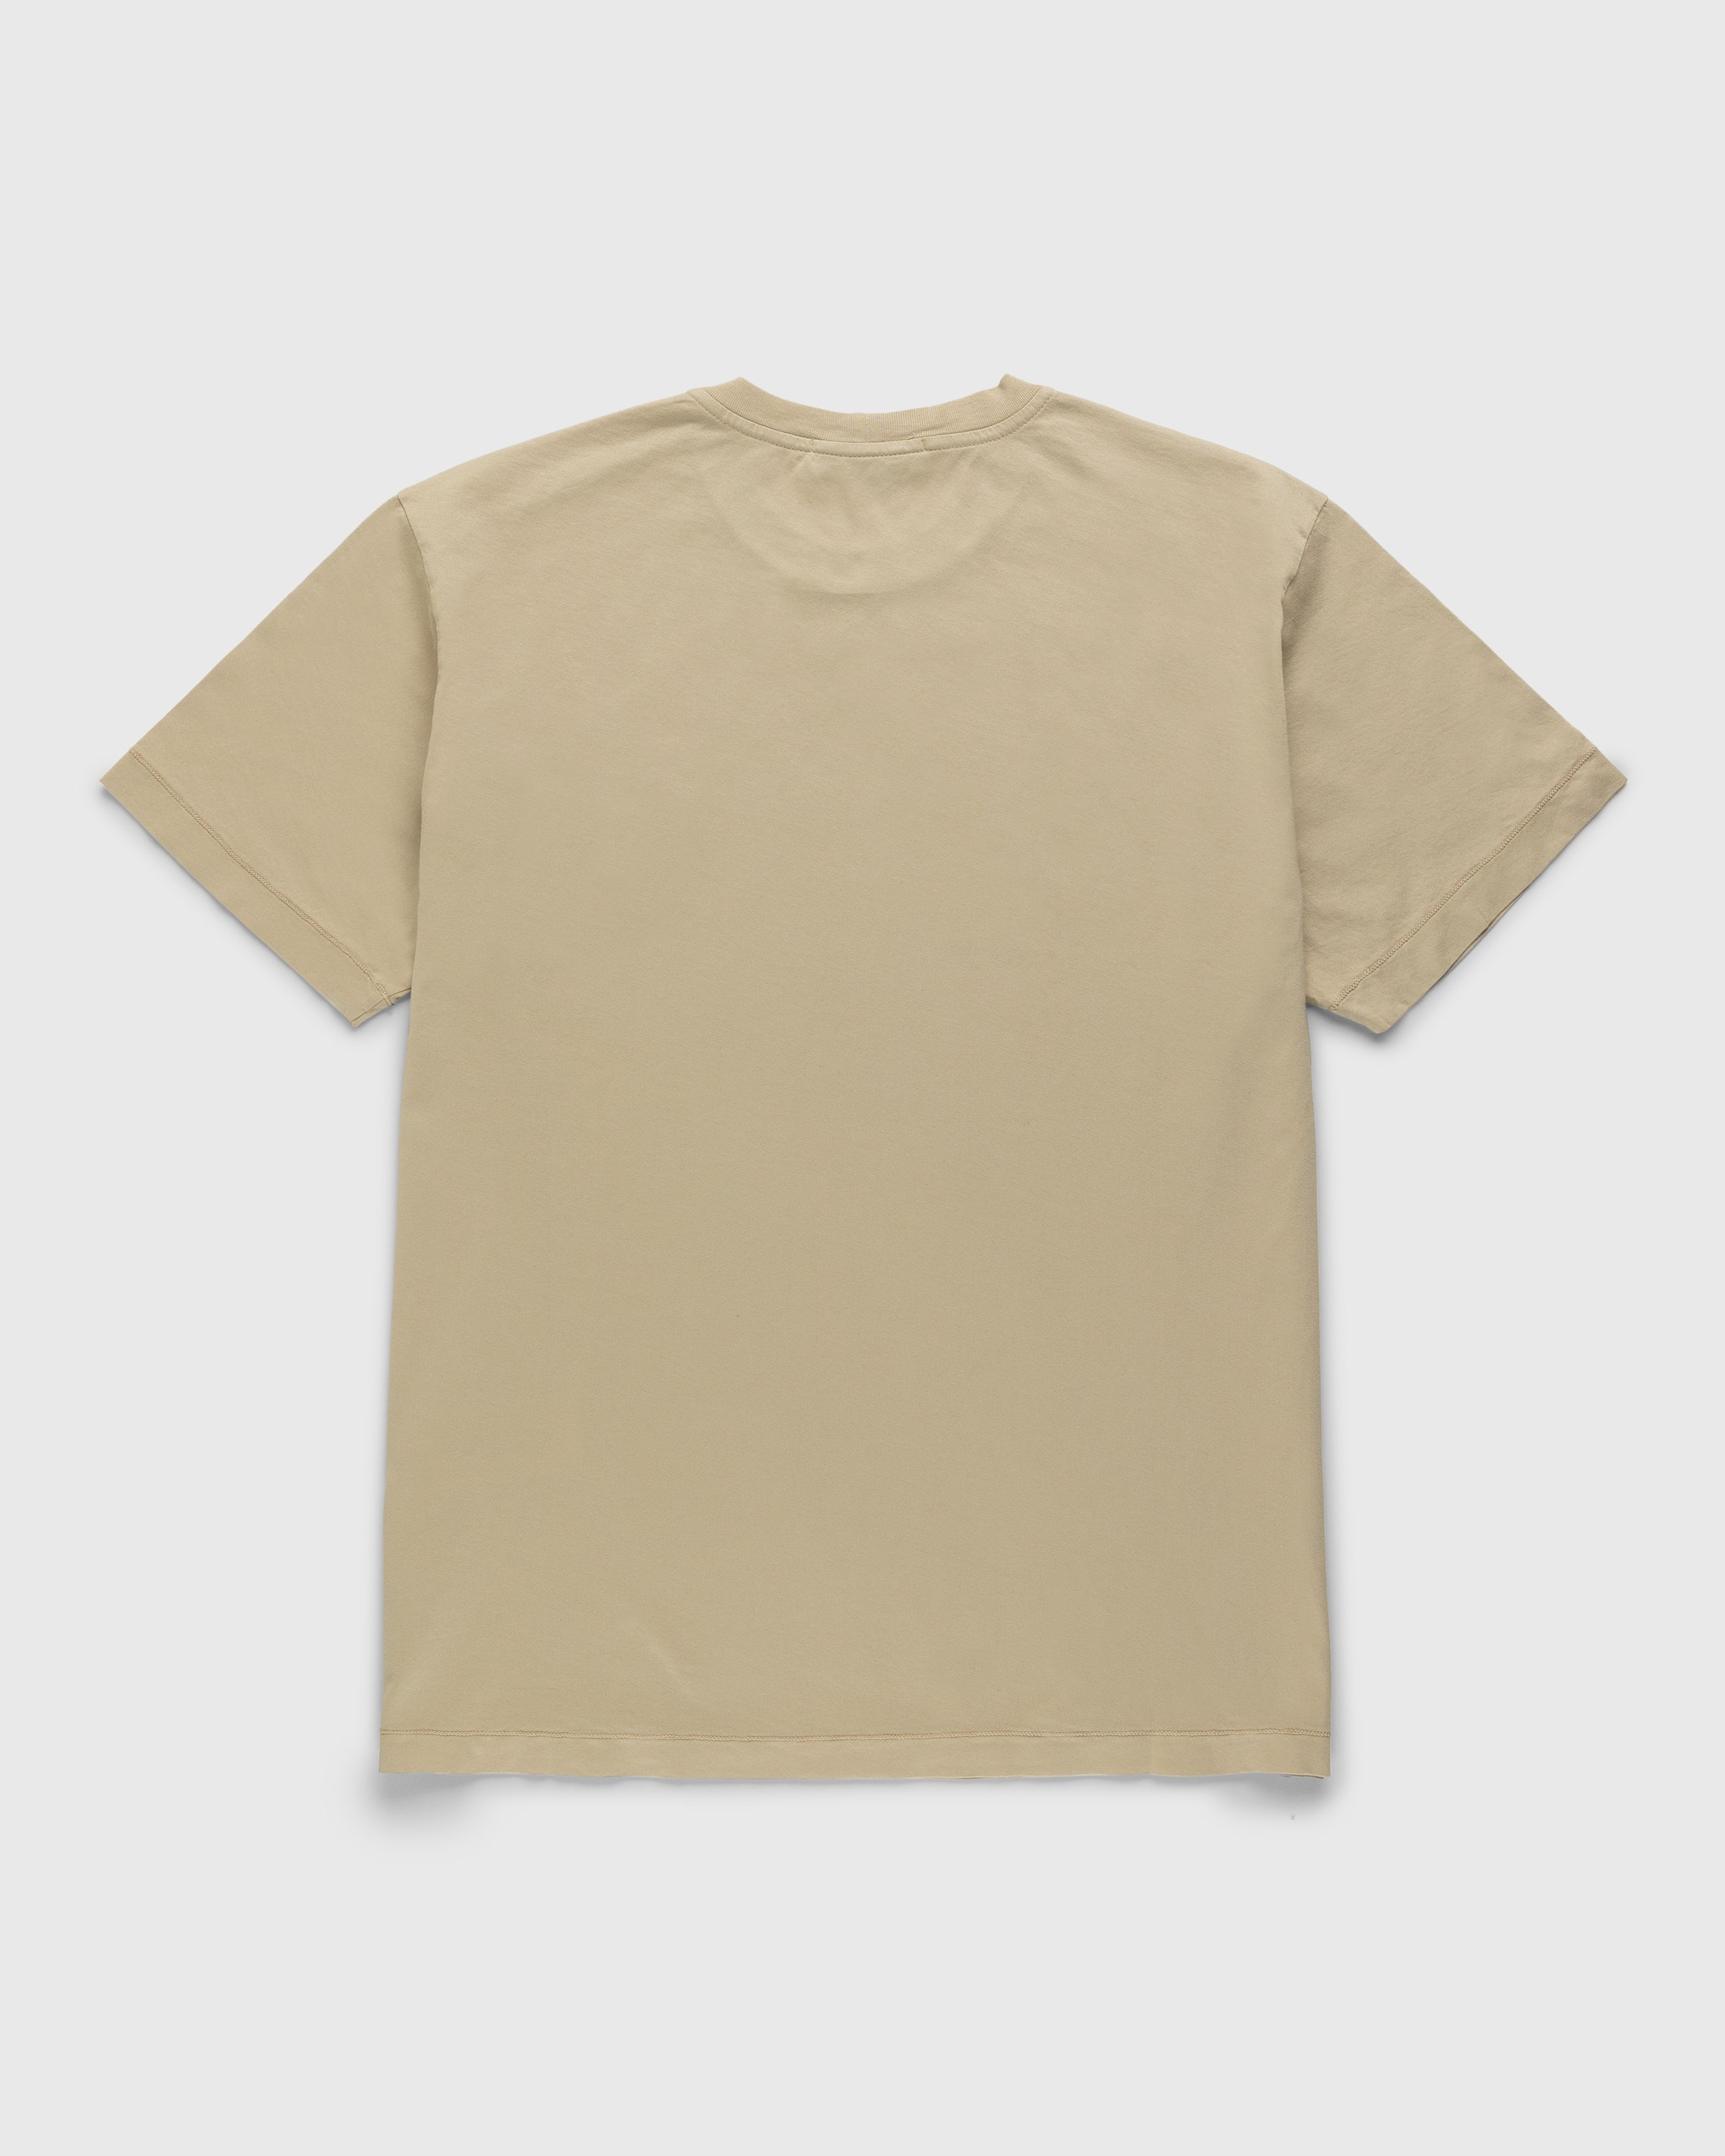 Stone Island - Garment-Dyed T-Shirt Beige - Clothing - Beige - Image 2